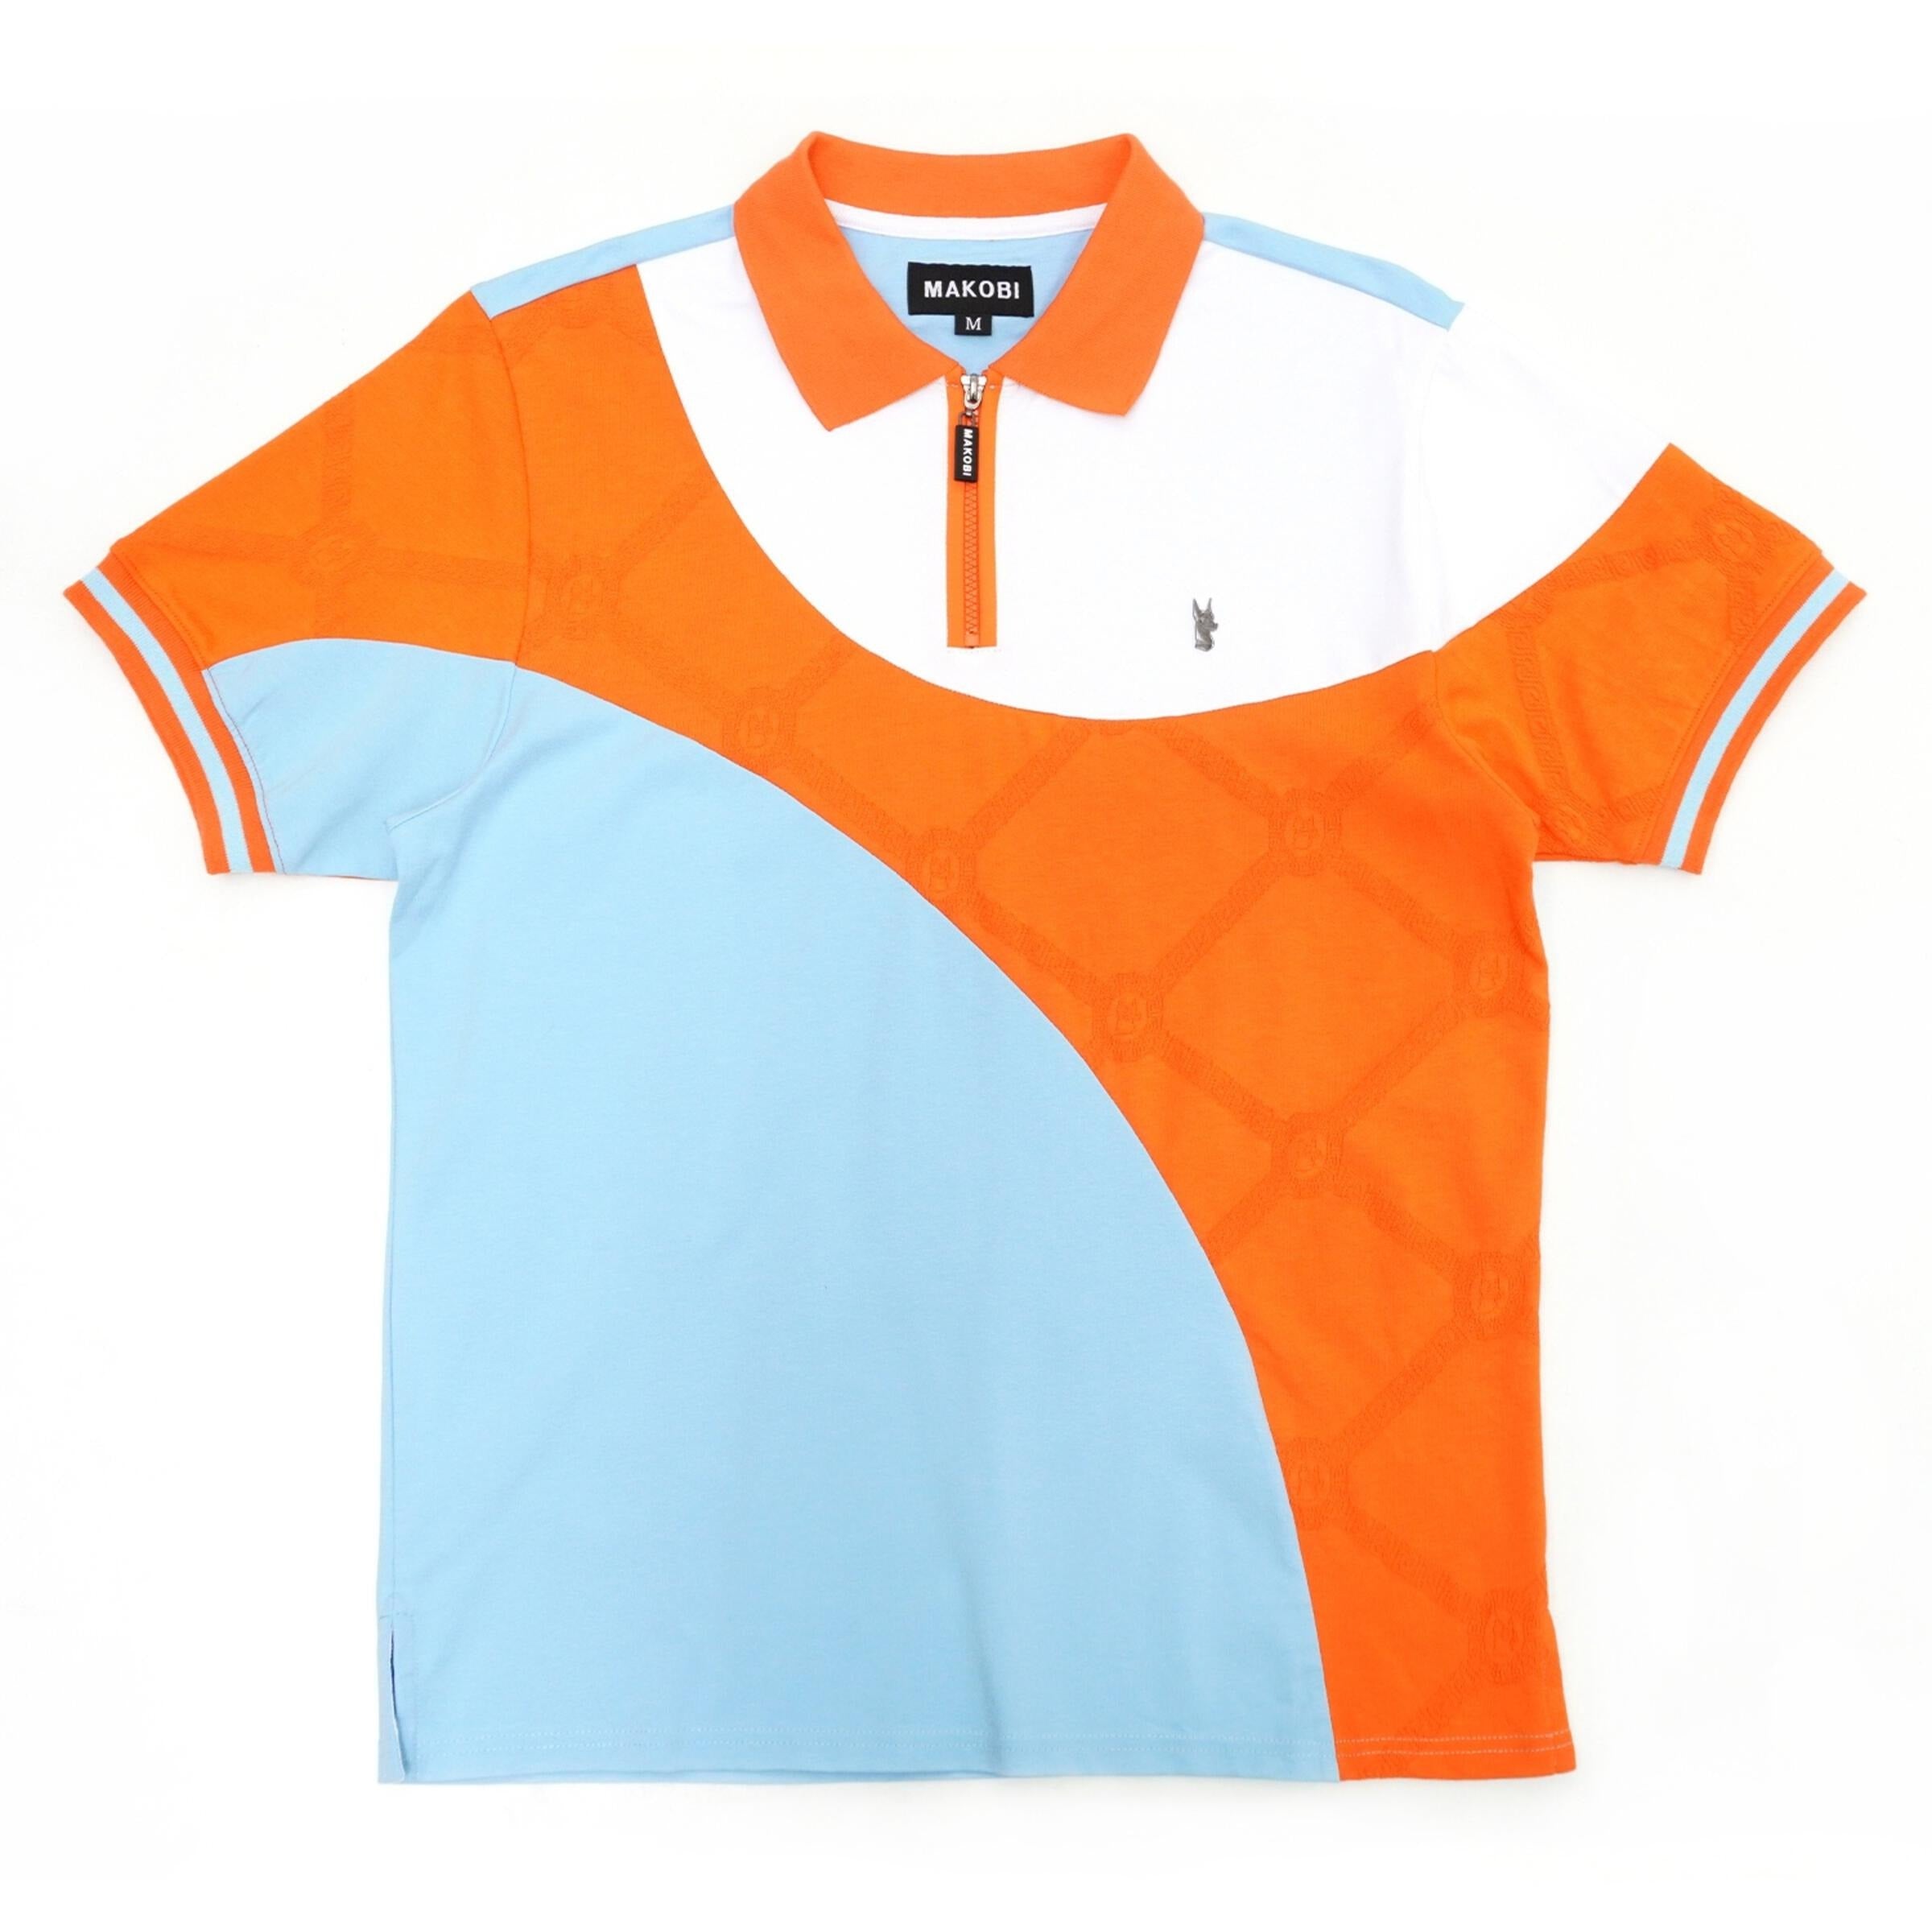 Makobi Big & Tall Polo Shirt - Monogram - M201B